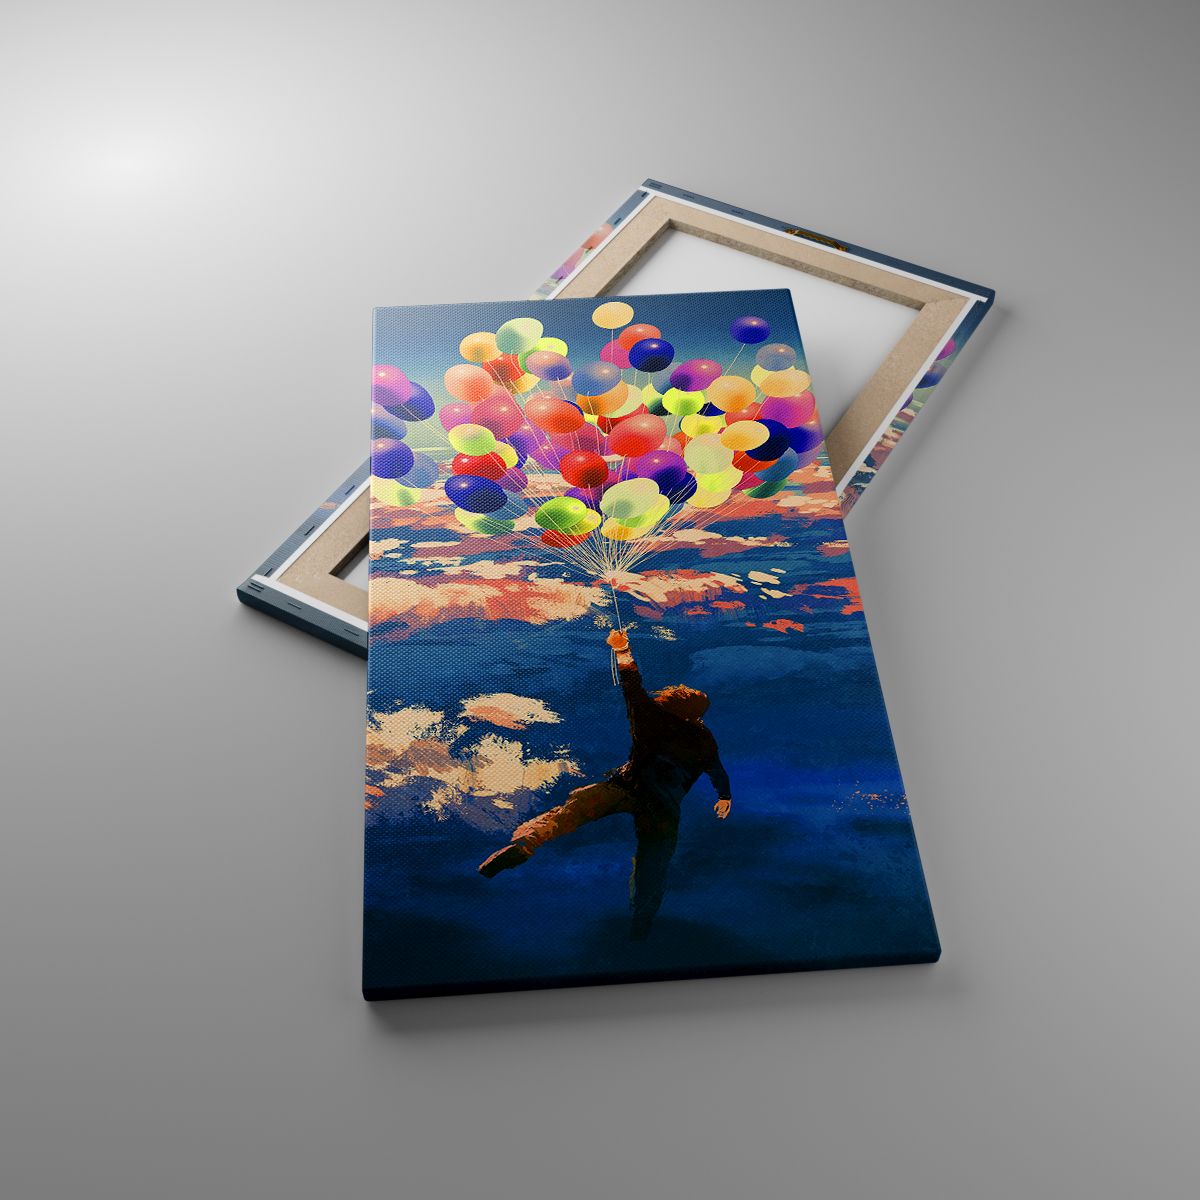 Leinwandbild Für Kinder, Leinwandbild Bunte Luftballons, Leinwandbild Abstraktion, Leinwandbild Kunst, Leinwandbild Traum